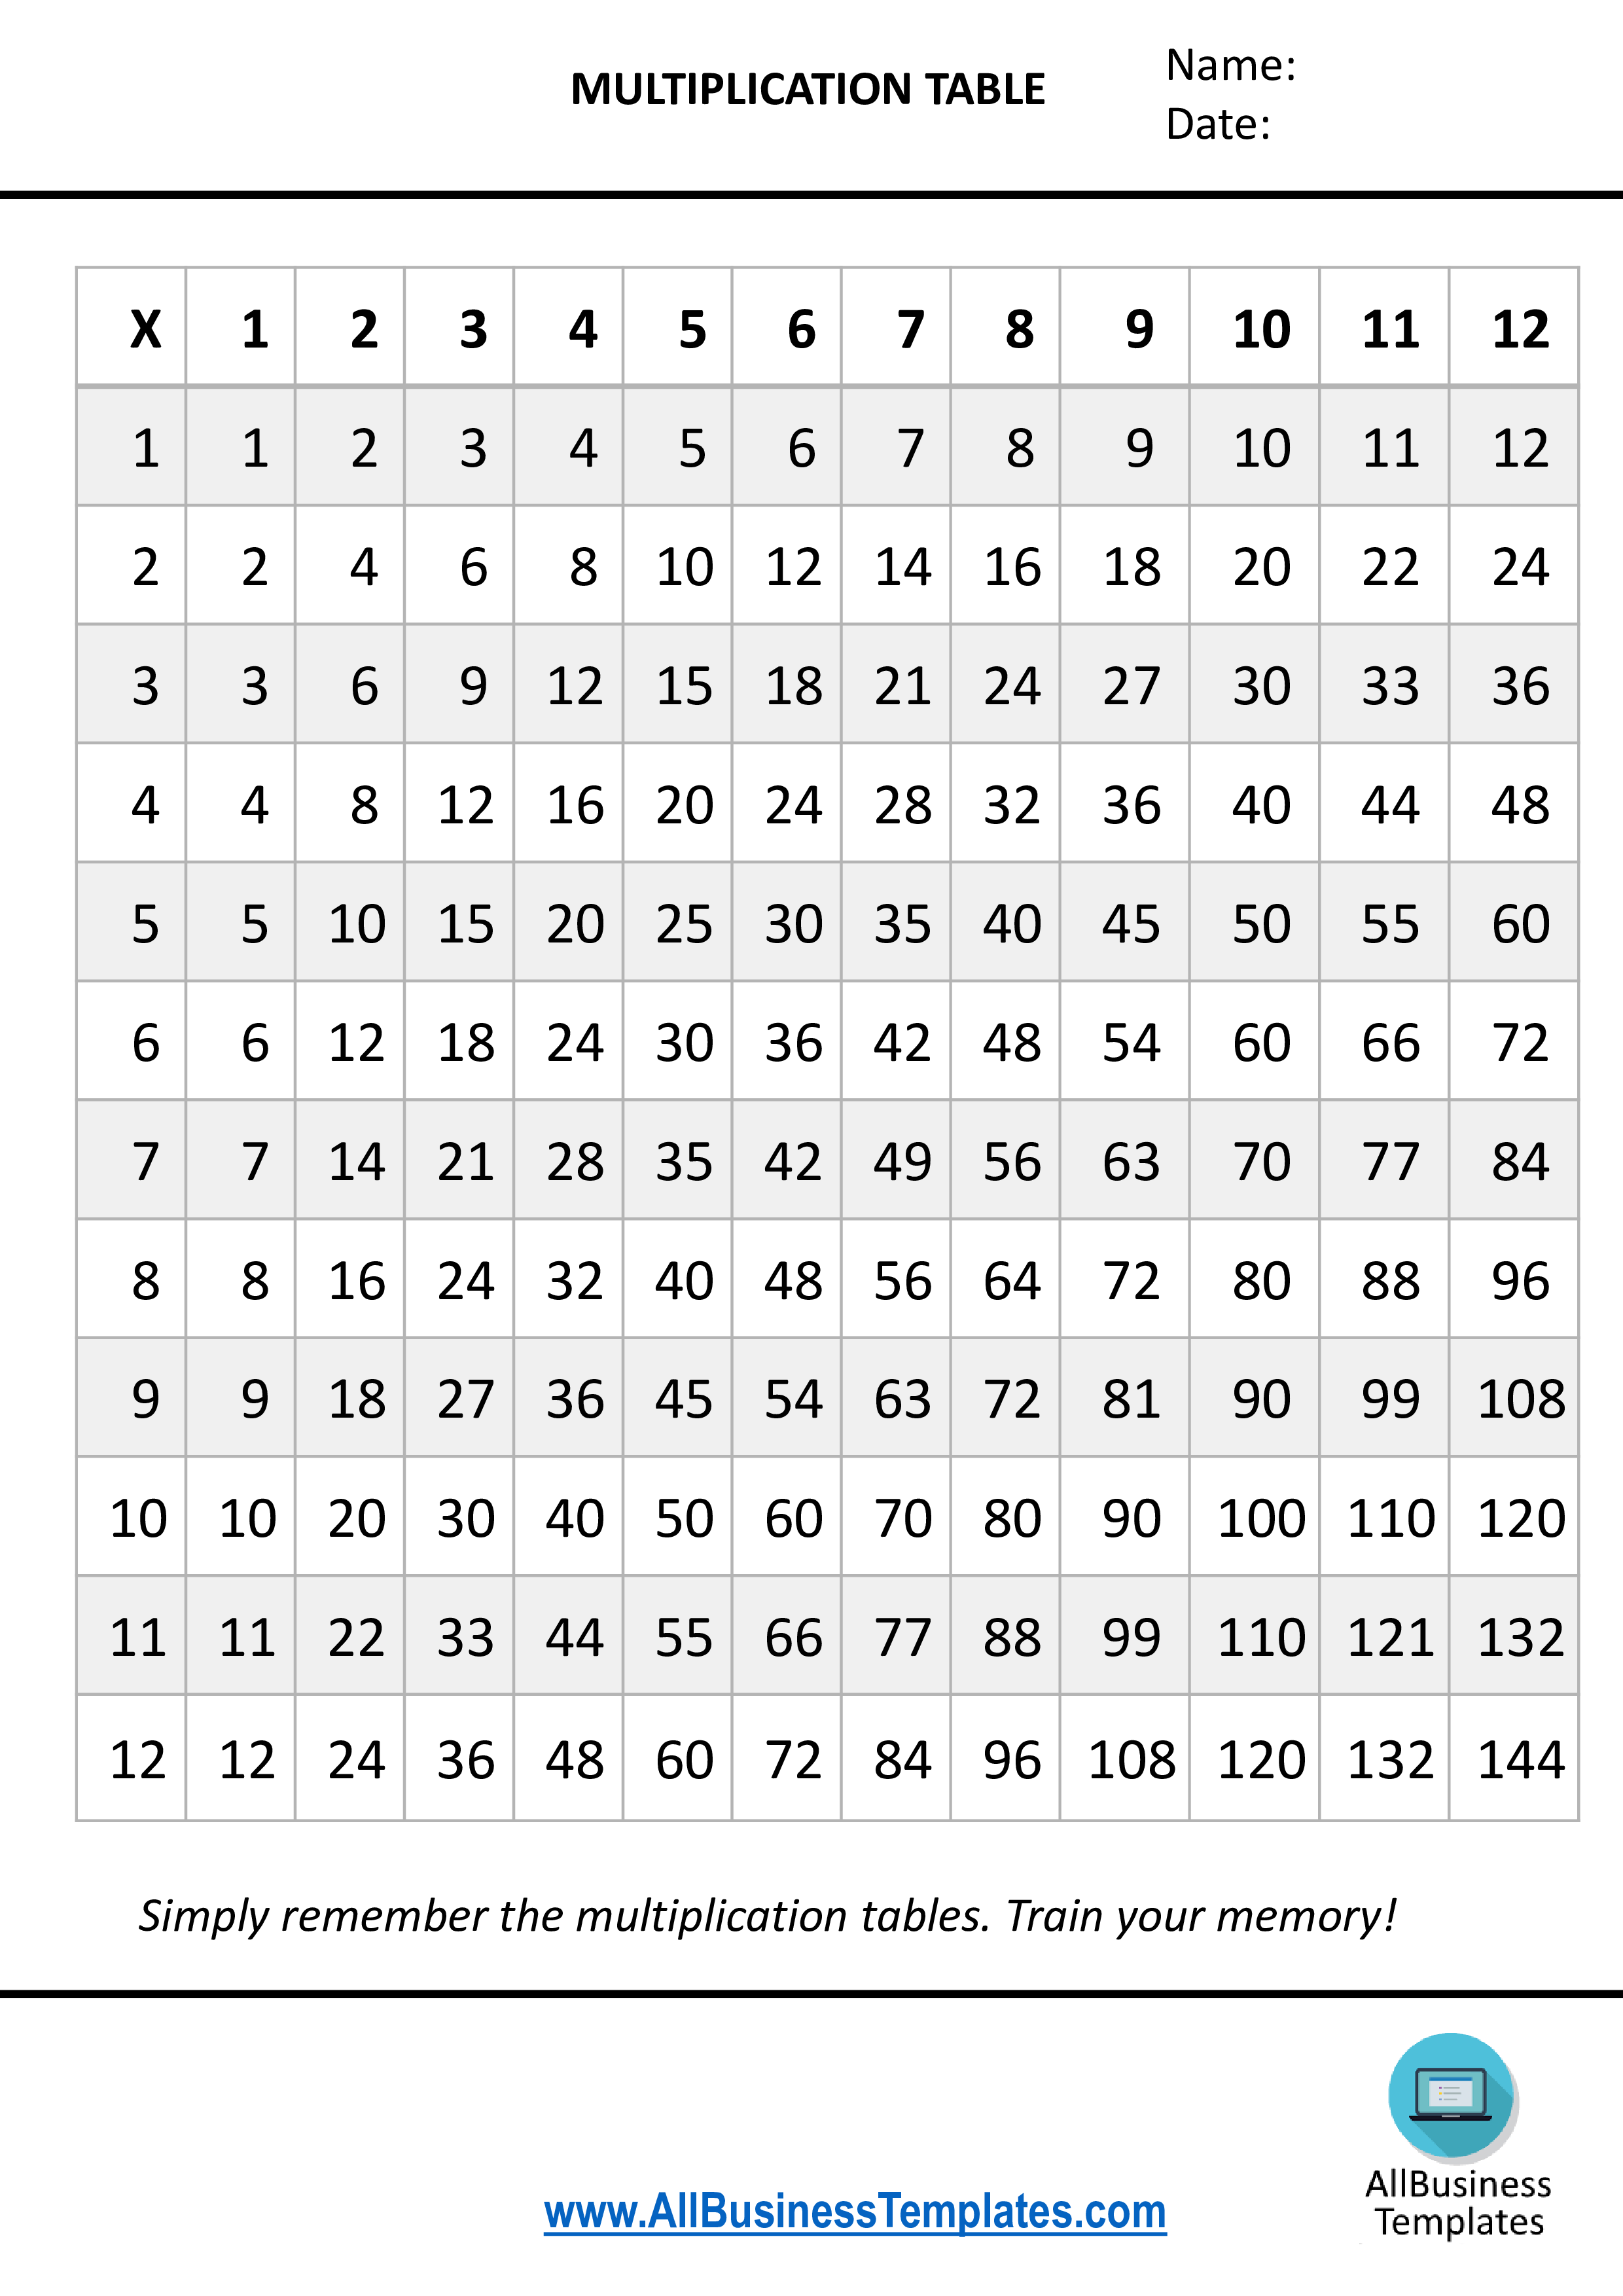 multiplication table 1 to 12x voorbeeld afbeelding 